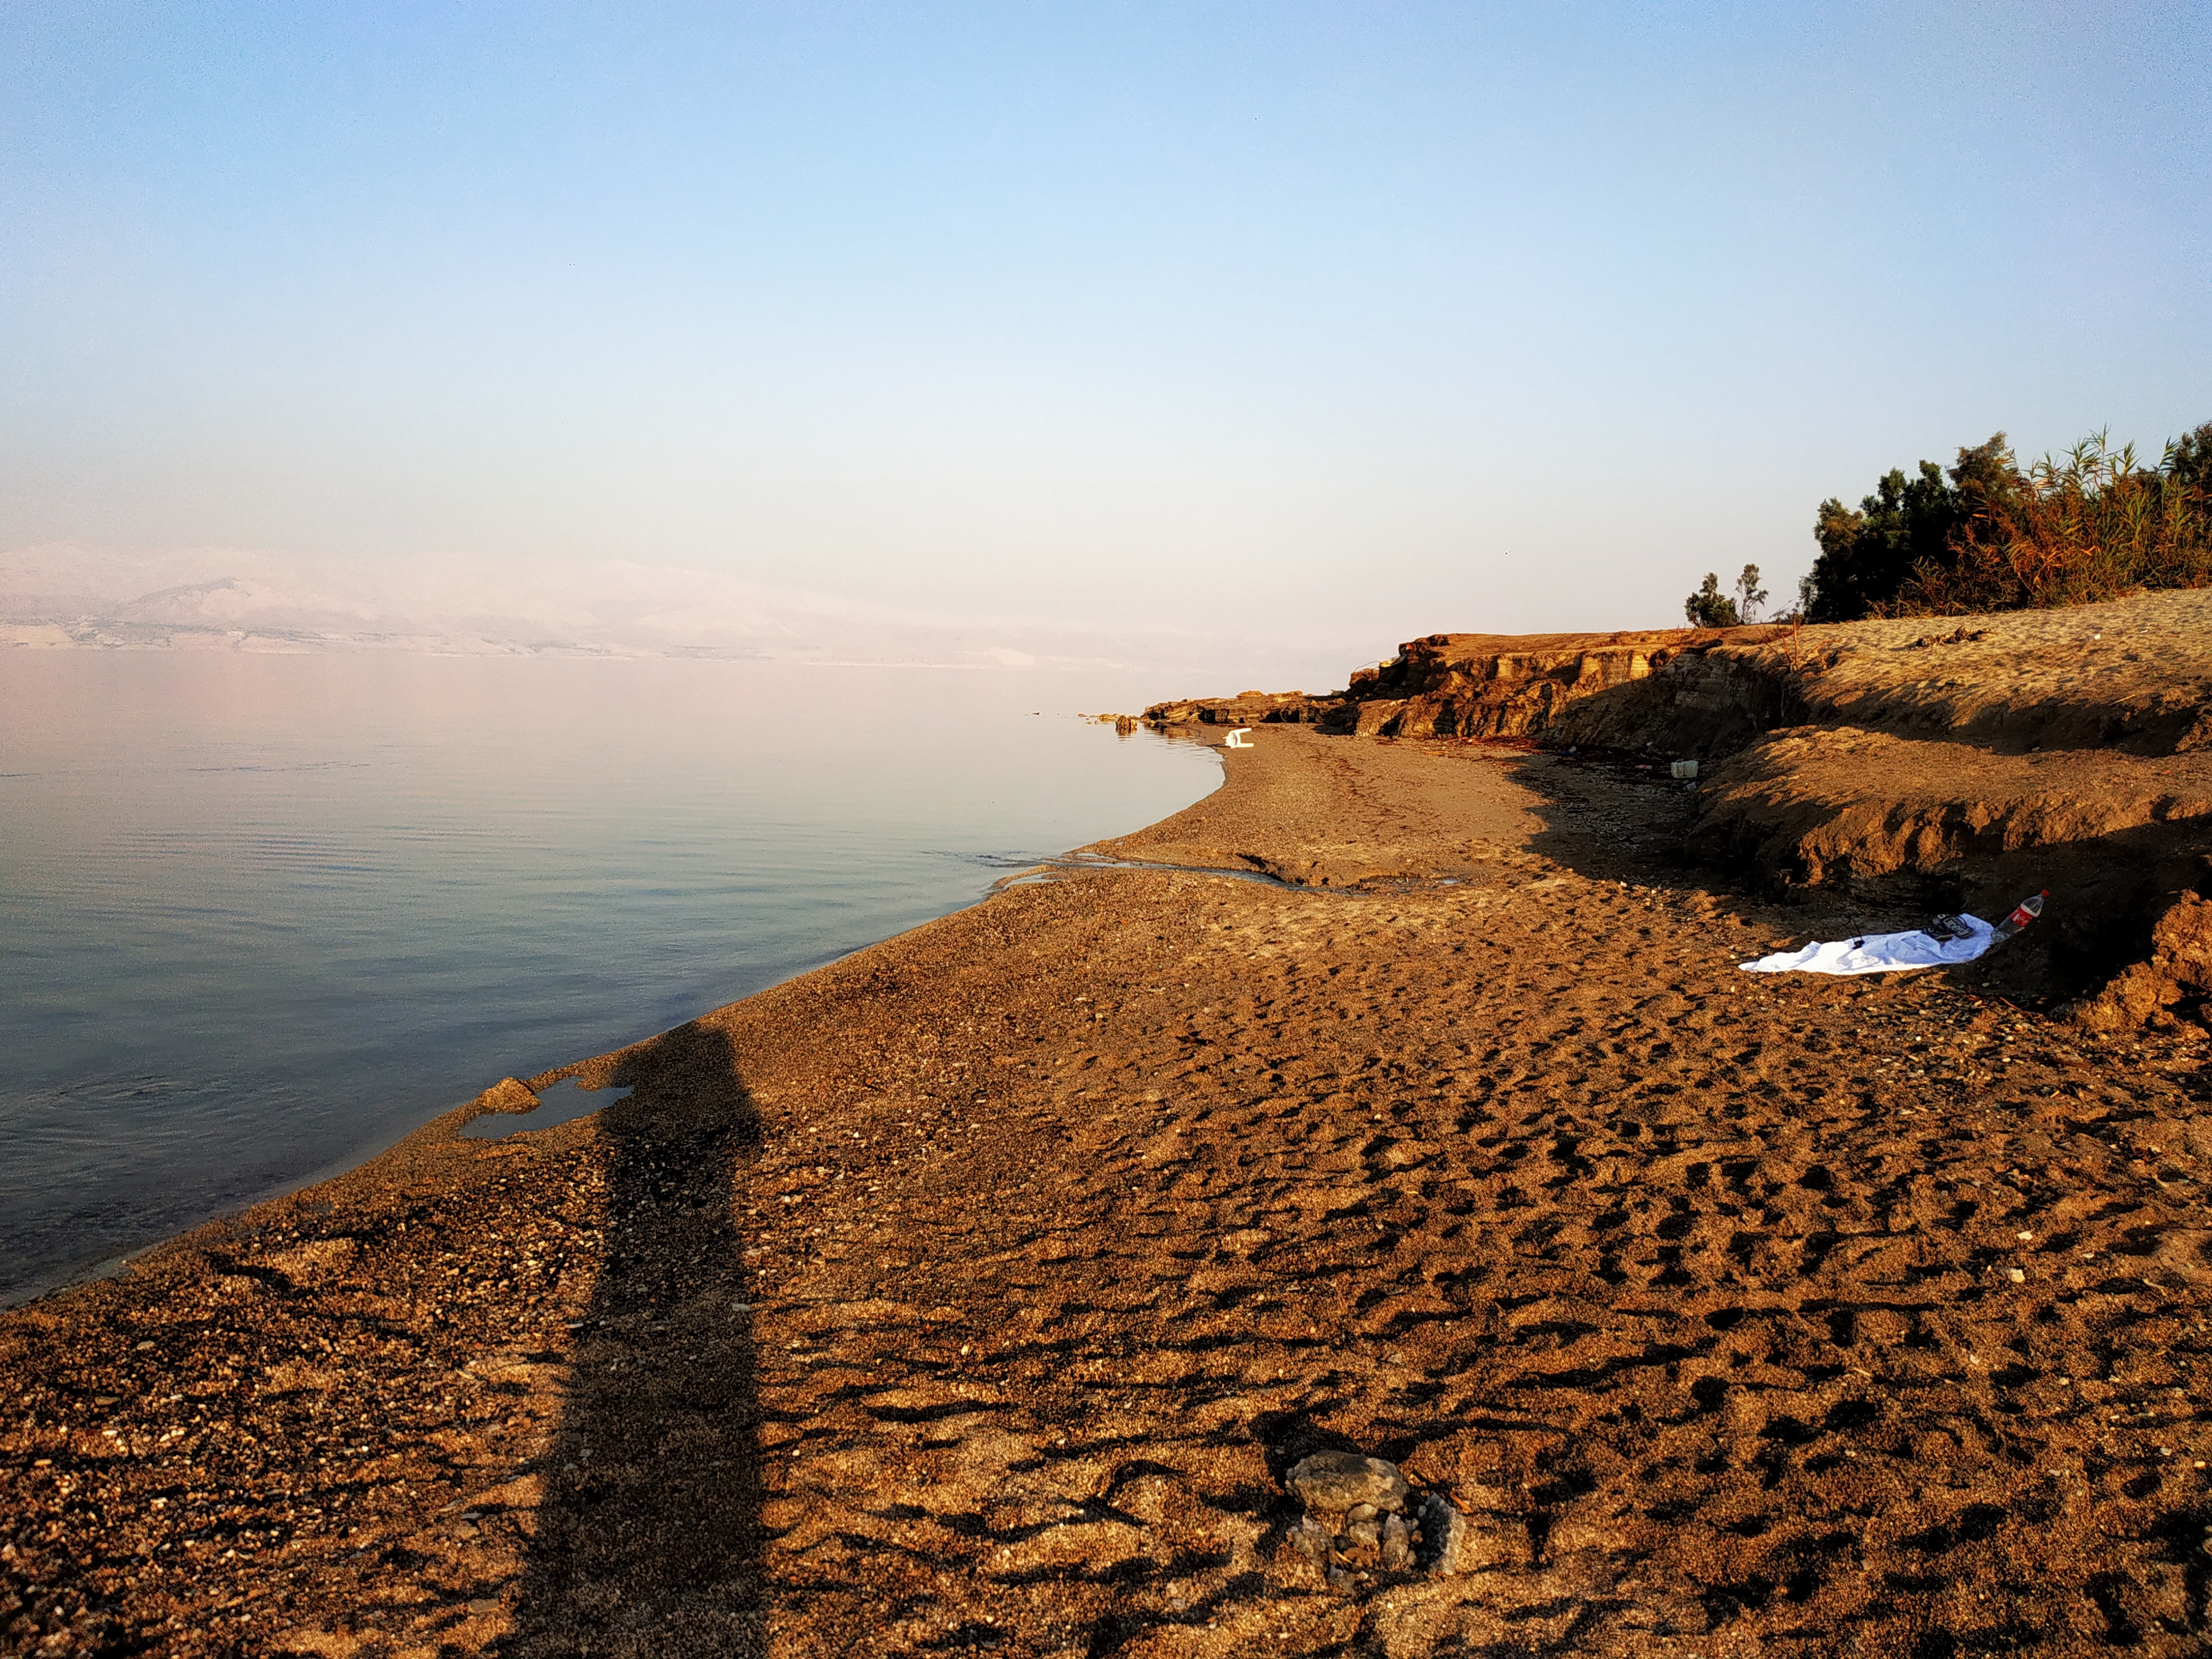 עיינות קדם או חוף מצוקי דרגות, טיולי ג'יפים תרפיה טבעית בבוץ וים המלח . Dead Sea